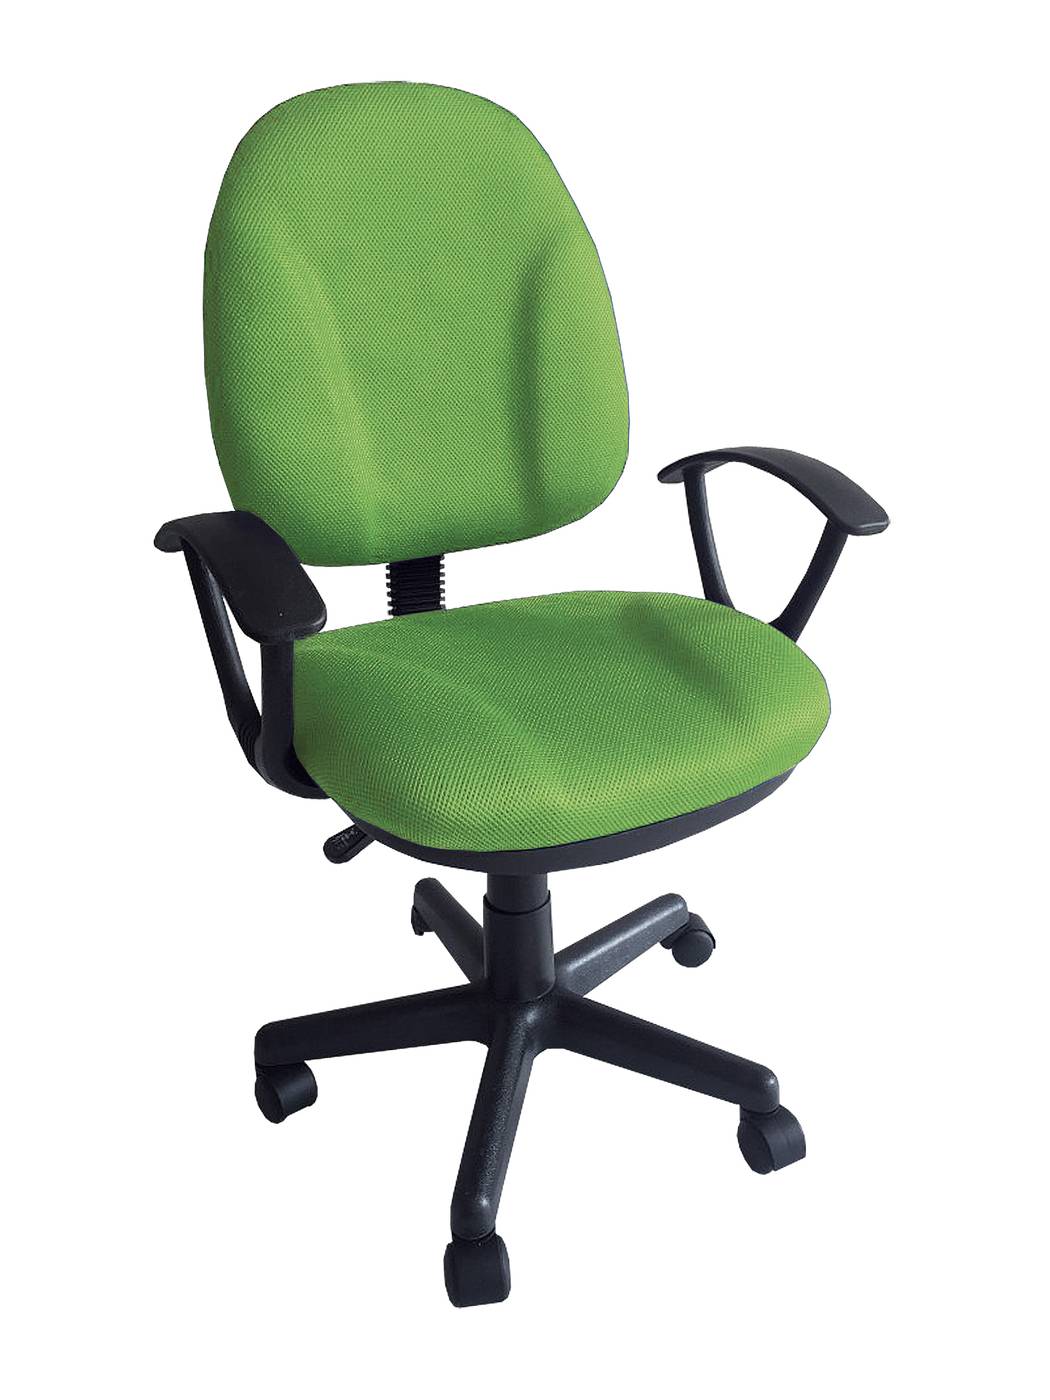 Silla giratoria para escritorio juvenil, con ruedas, elevable, con asiento y respaldo tapizado con tejido 3D color verde